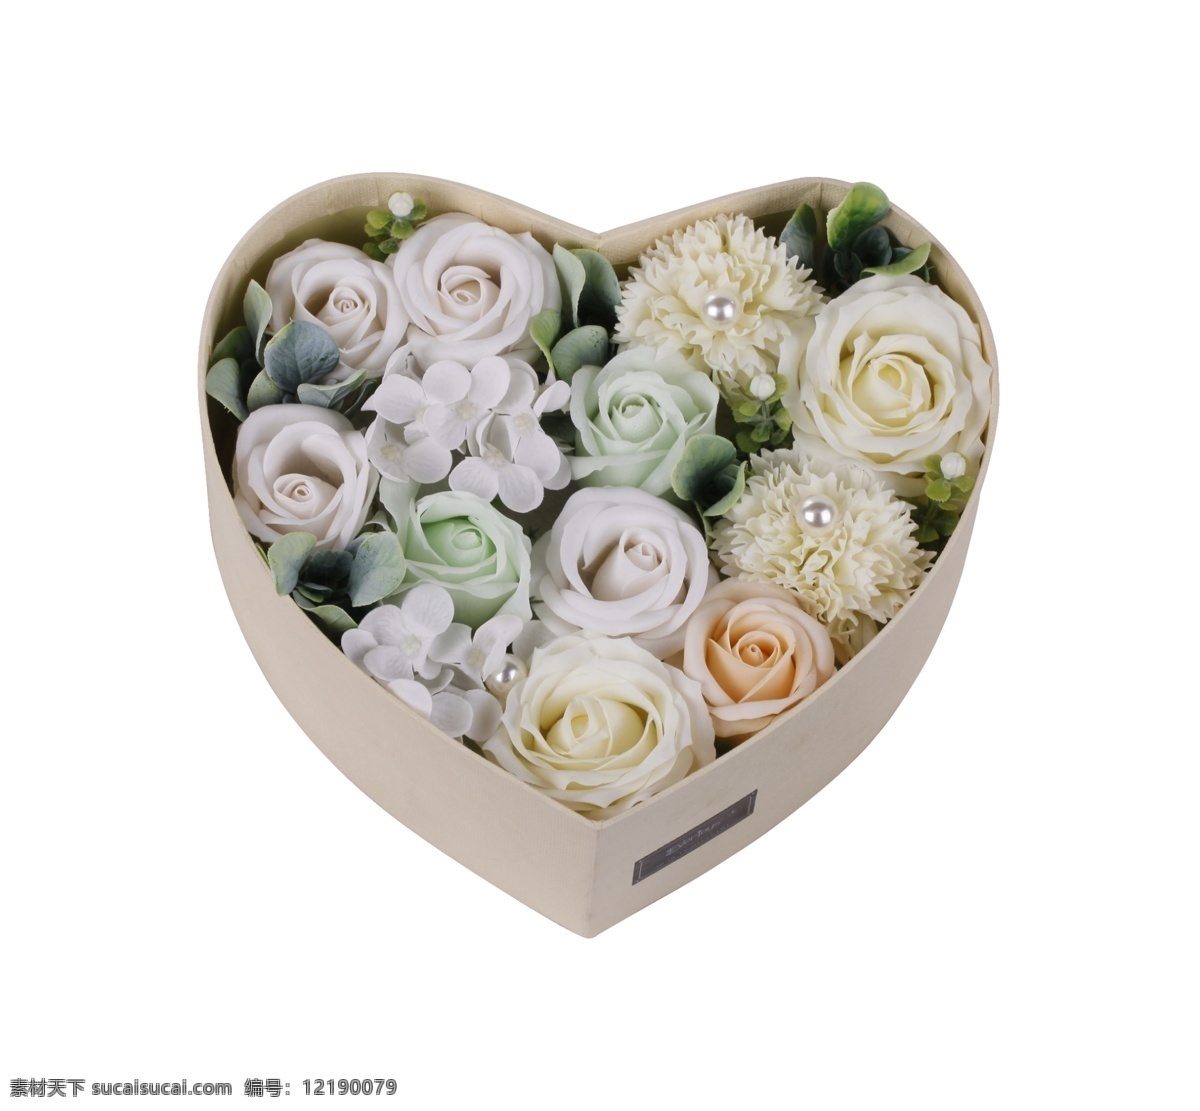 礼品 礼物 鲜花 盒子 唯美 美丽的 礼物花 花朵 送女友 鲜花礼盒 花 礼物盒子 情人节 甜蜜 玫瑰 爱情 爱心